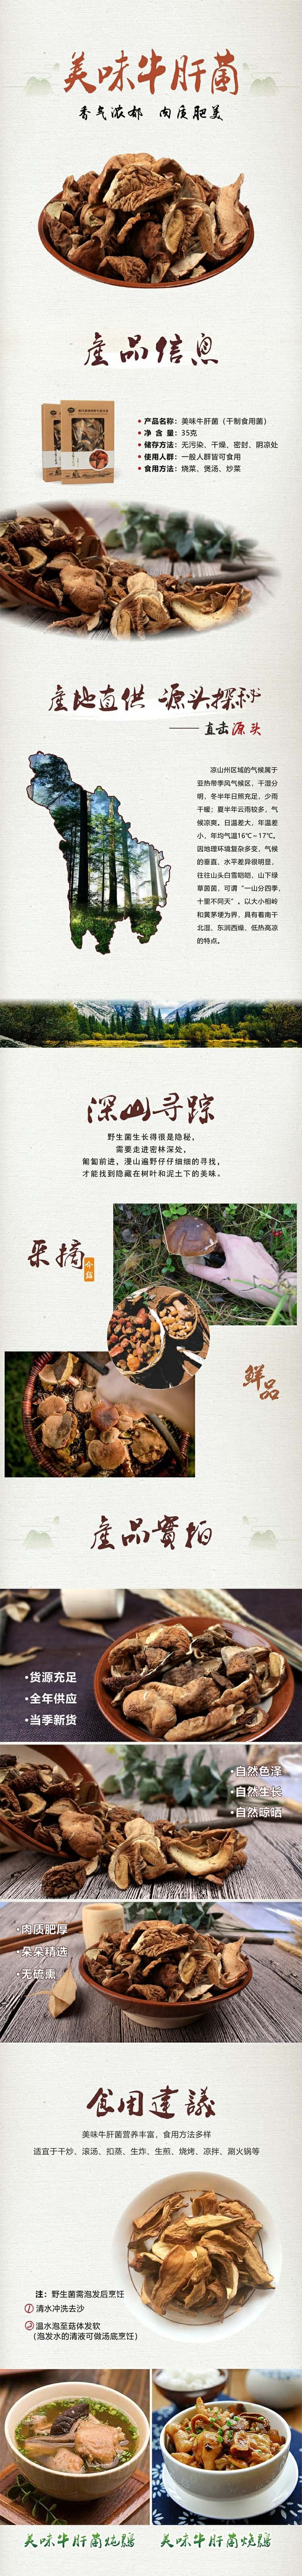  川野 美味牛肝菌 野生菌干货营养菌菇煲汤食材35g